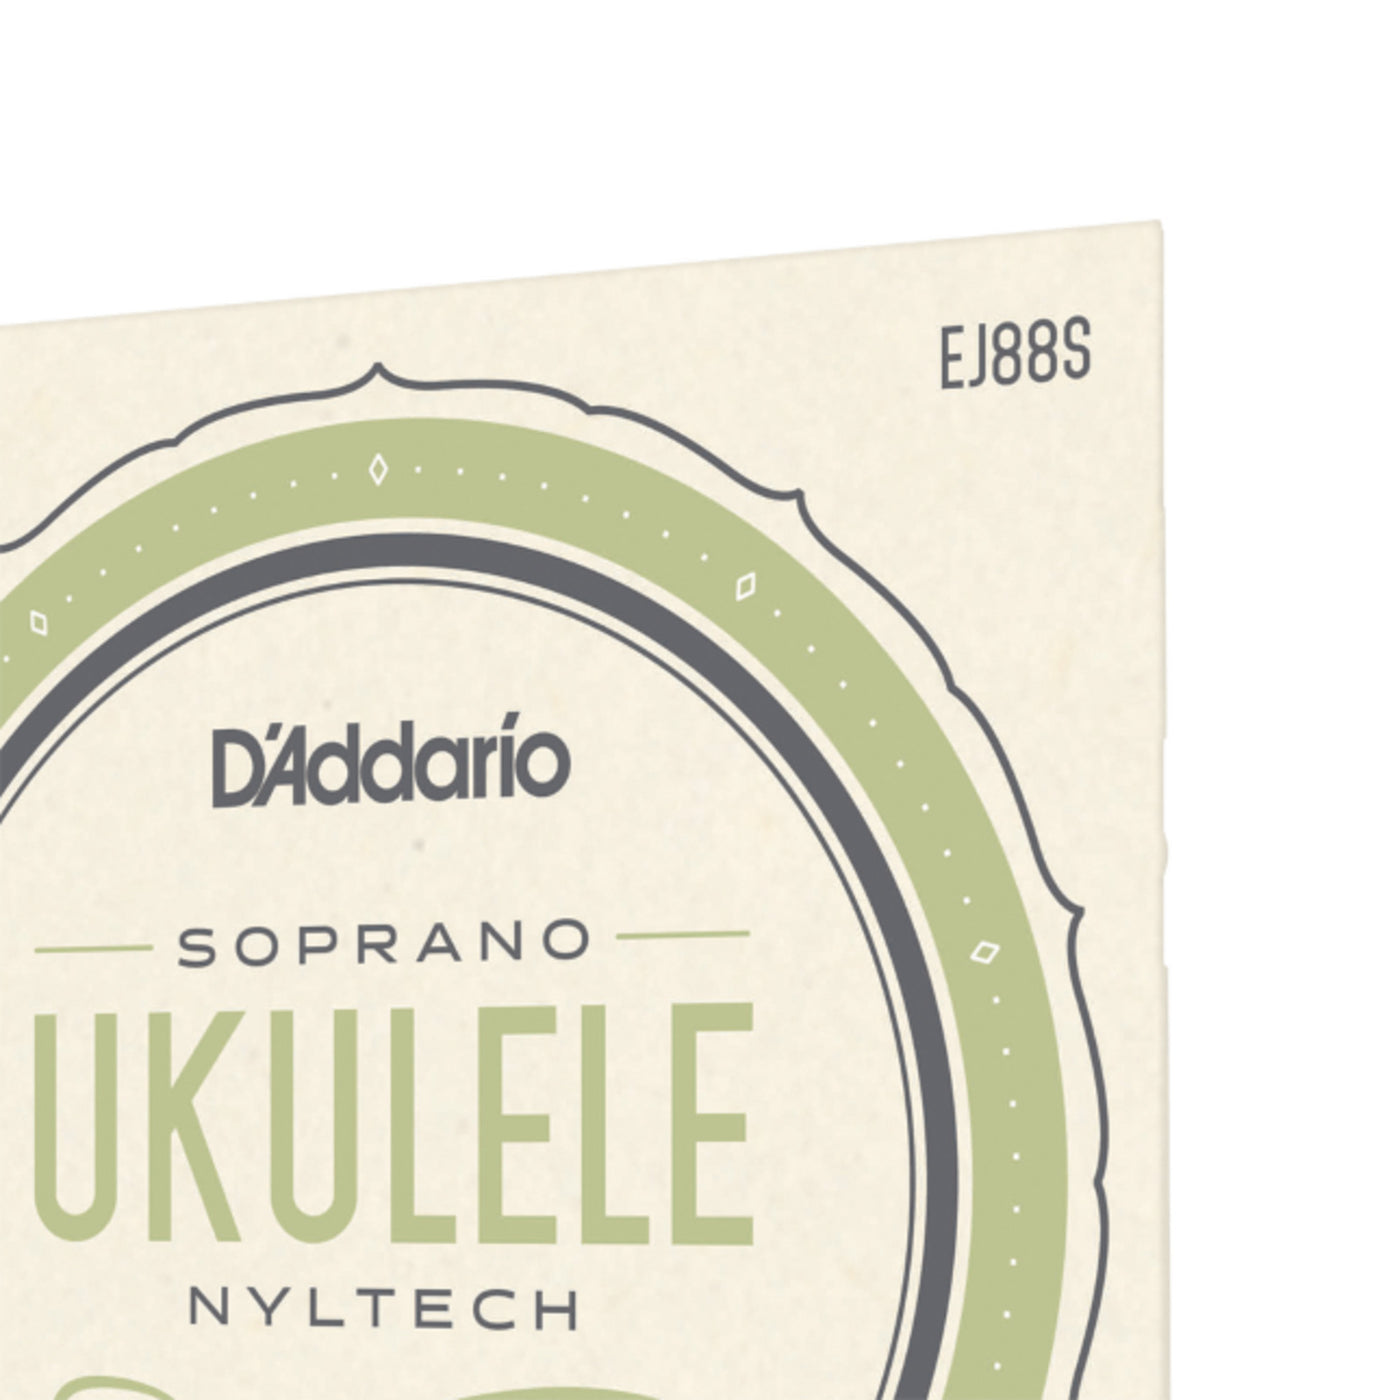 D'Addario Nyltech Ukulele Strings, Soprano (EJ88S)